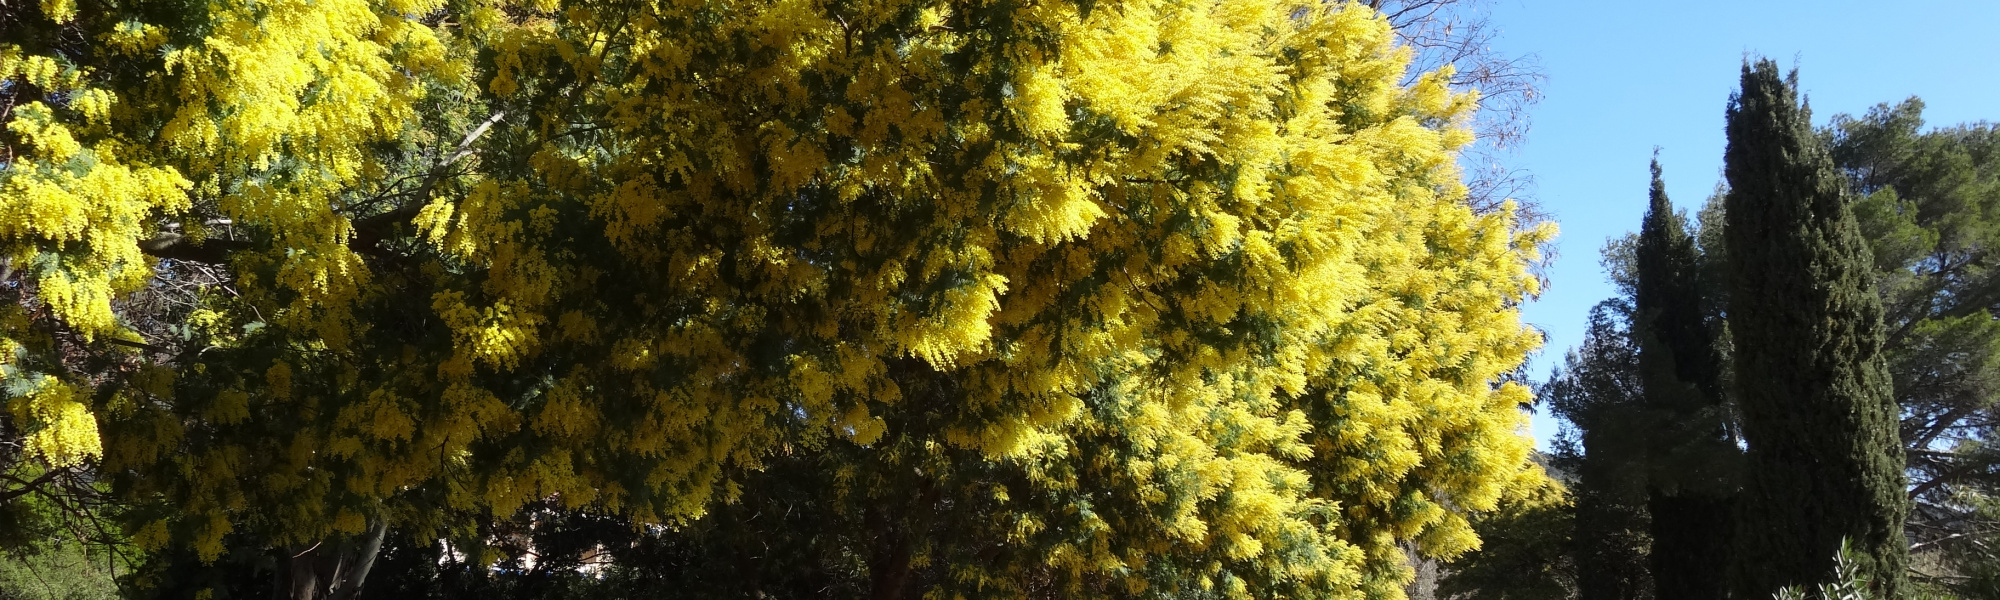 Fleurs d'hiver : mimosas et autres plantes remarquables - Balade accompagnée